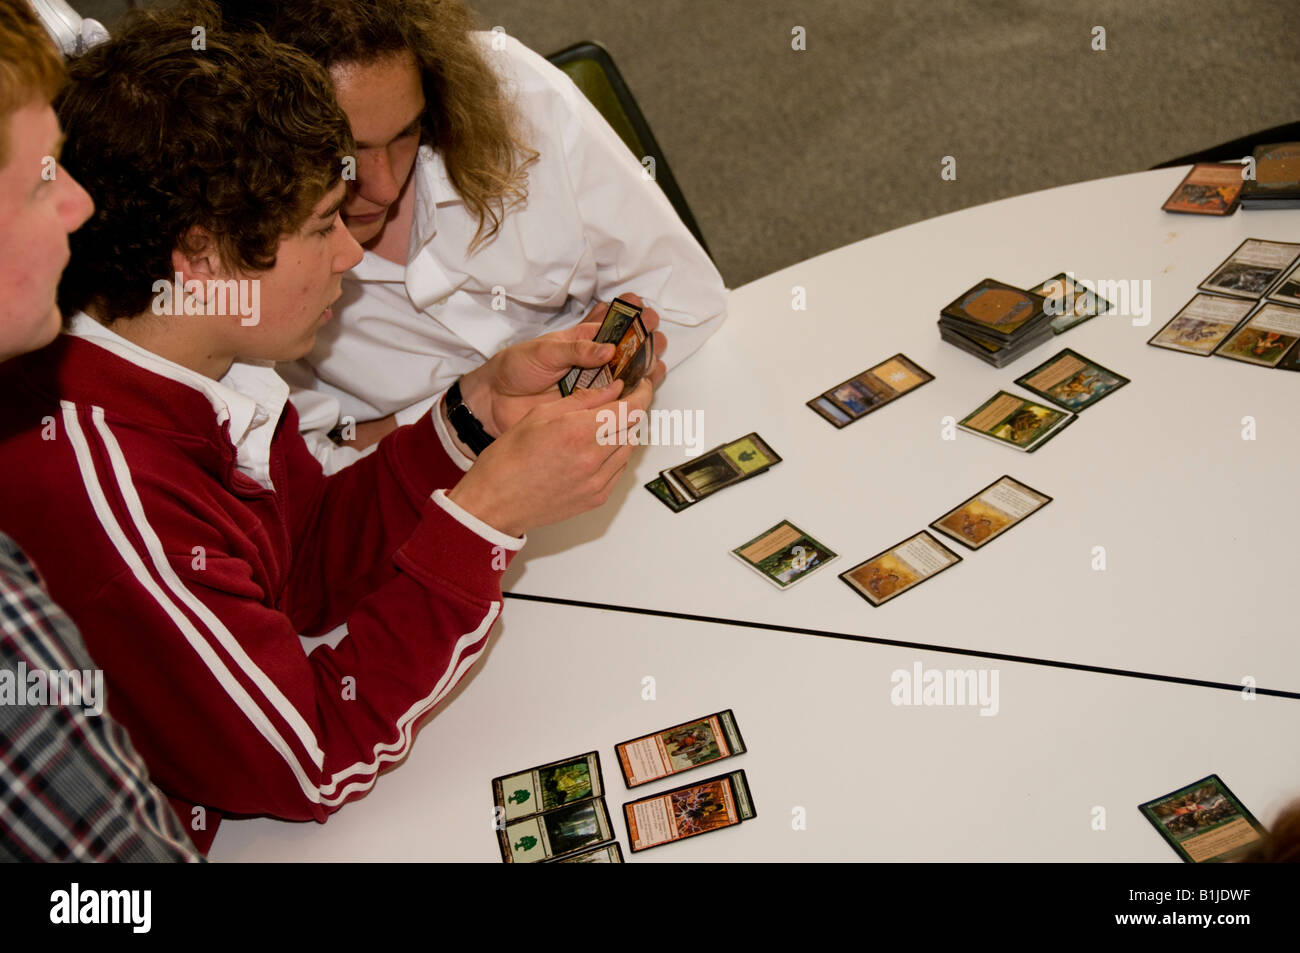 Dos muchachos adolescentes jugando Magic The Gathering juego de cartas coleccionables Foto de stock